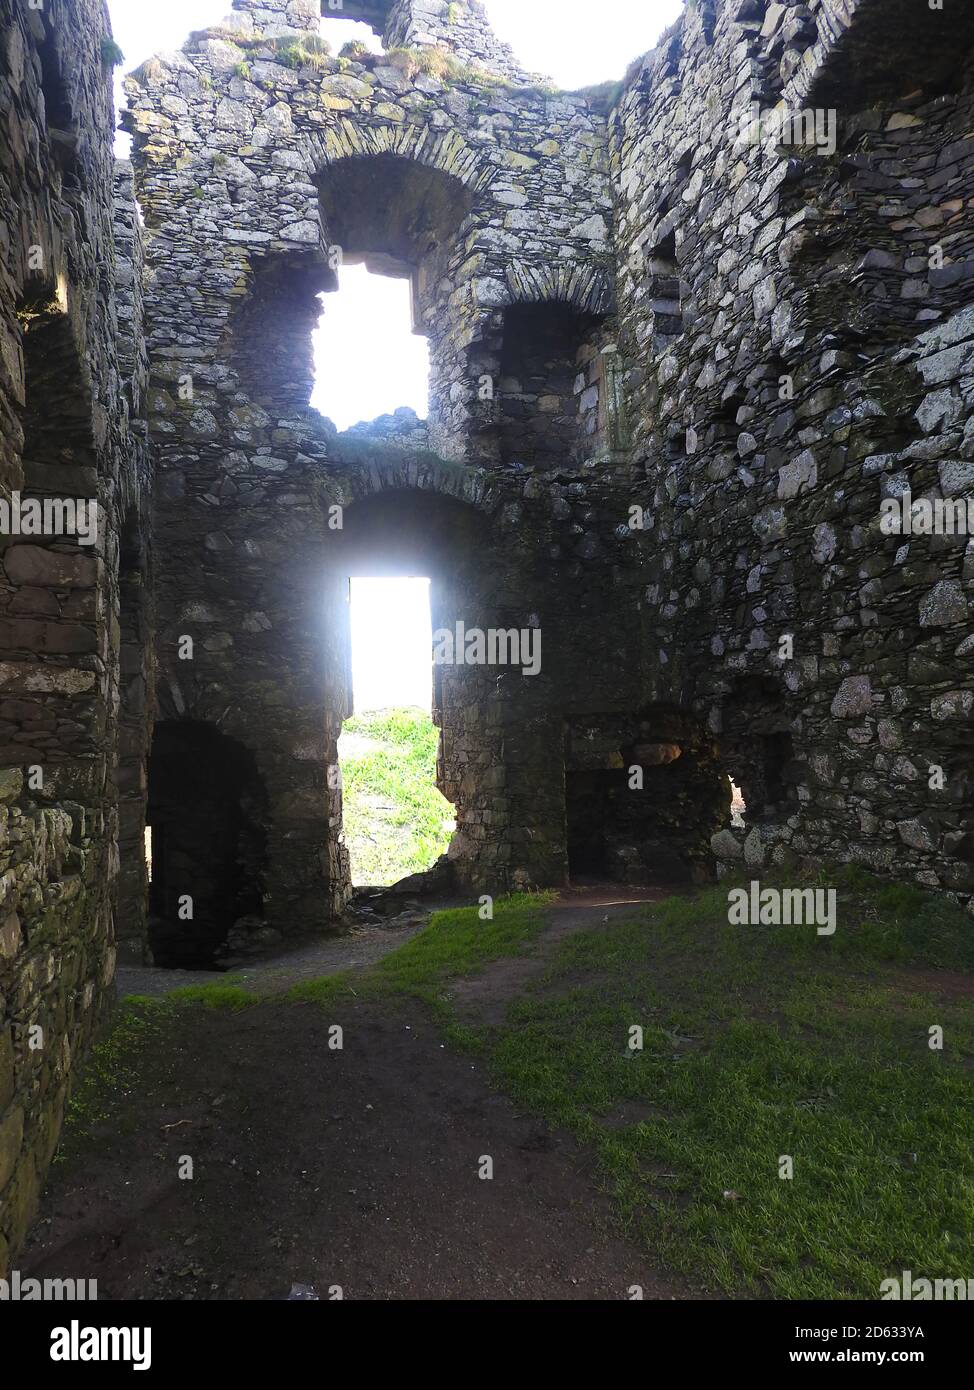 Okt 2020 - Innere des Dunskey Castle in der Nähe von Portpatrick Schottland. Portpatrick ist die geplante Endstation für eine geplante Tunnel- oder Brückenverbindung nach Larne in Irland. Stockfoto